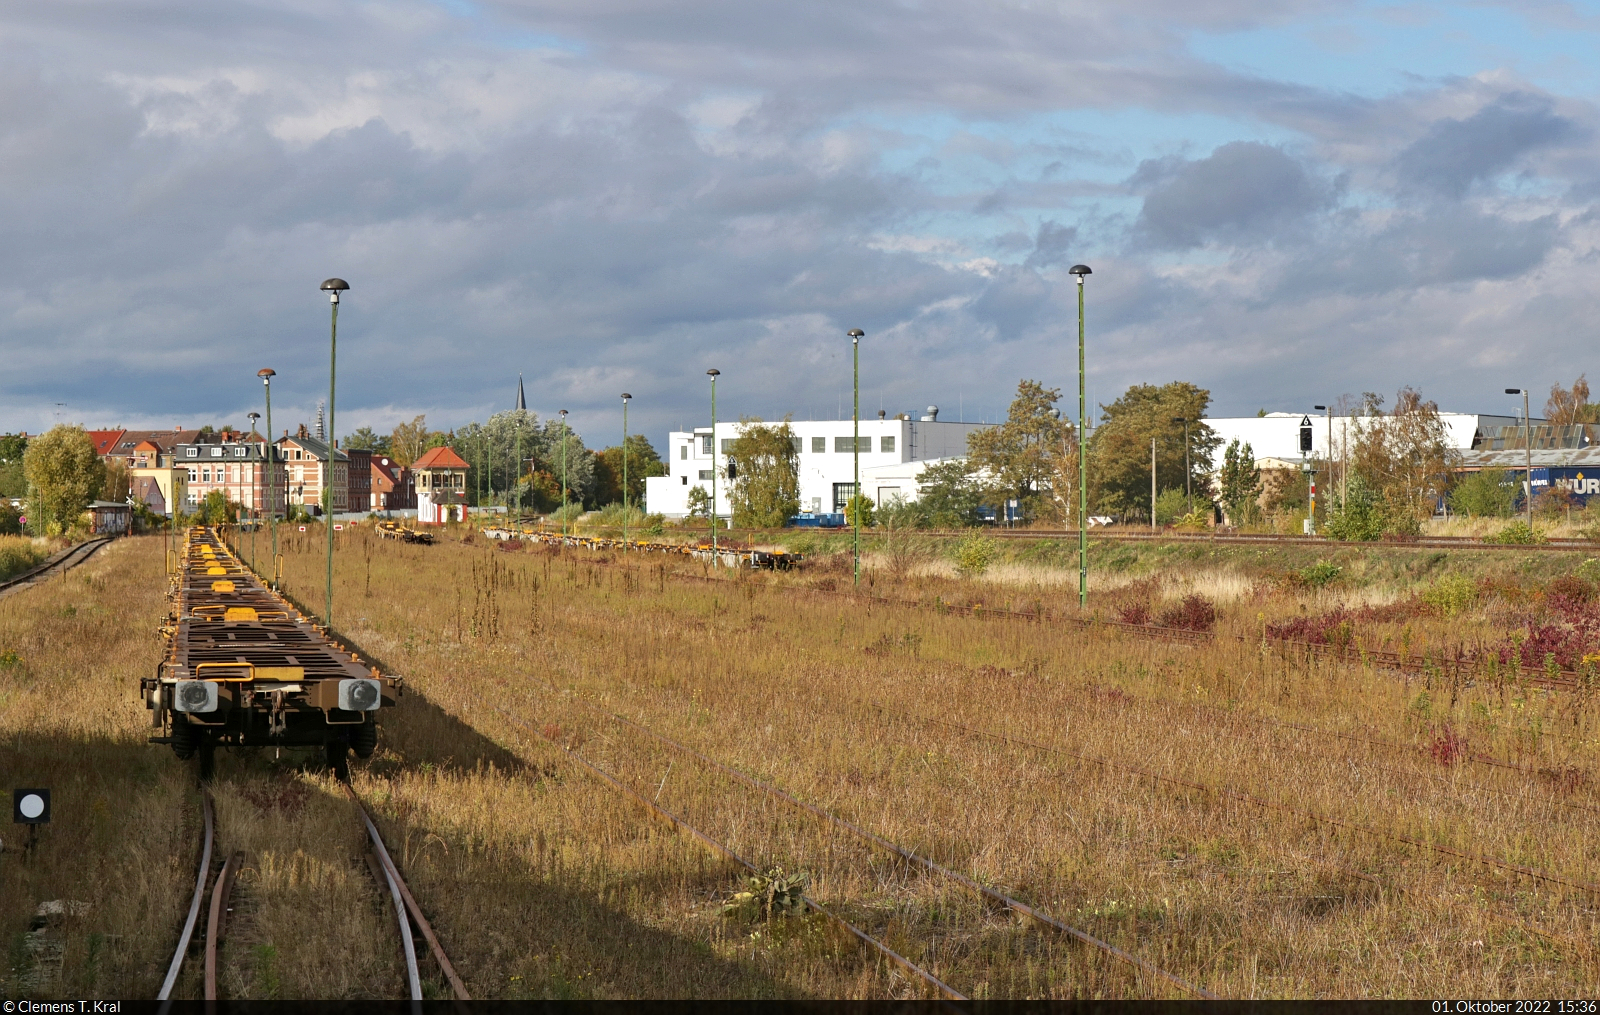 Historisches Eisenbahnwochenende Benndorf–Staßfurt

Blick aus dem Zugfenster eines Zubringer-Zuges zum Lokschuppen-Fest auf den Güterbahnhof Staßfurt, in dem hauptsächlich alte wie neue Wagen abgestellt werden.

🕓 1.10.2022 | 15:36 Uhr